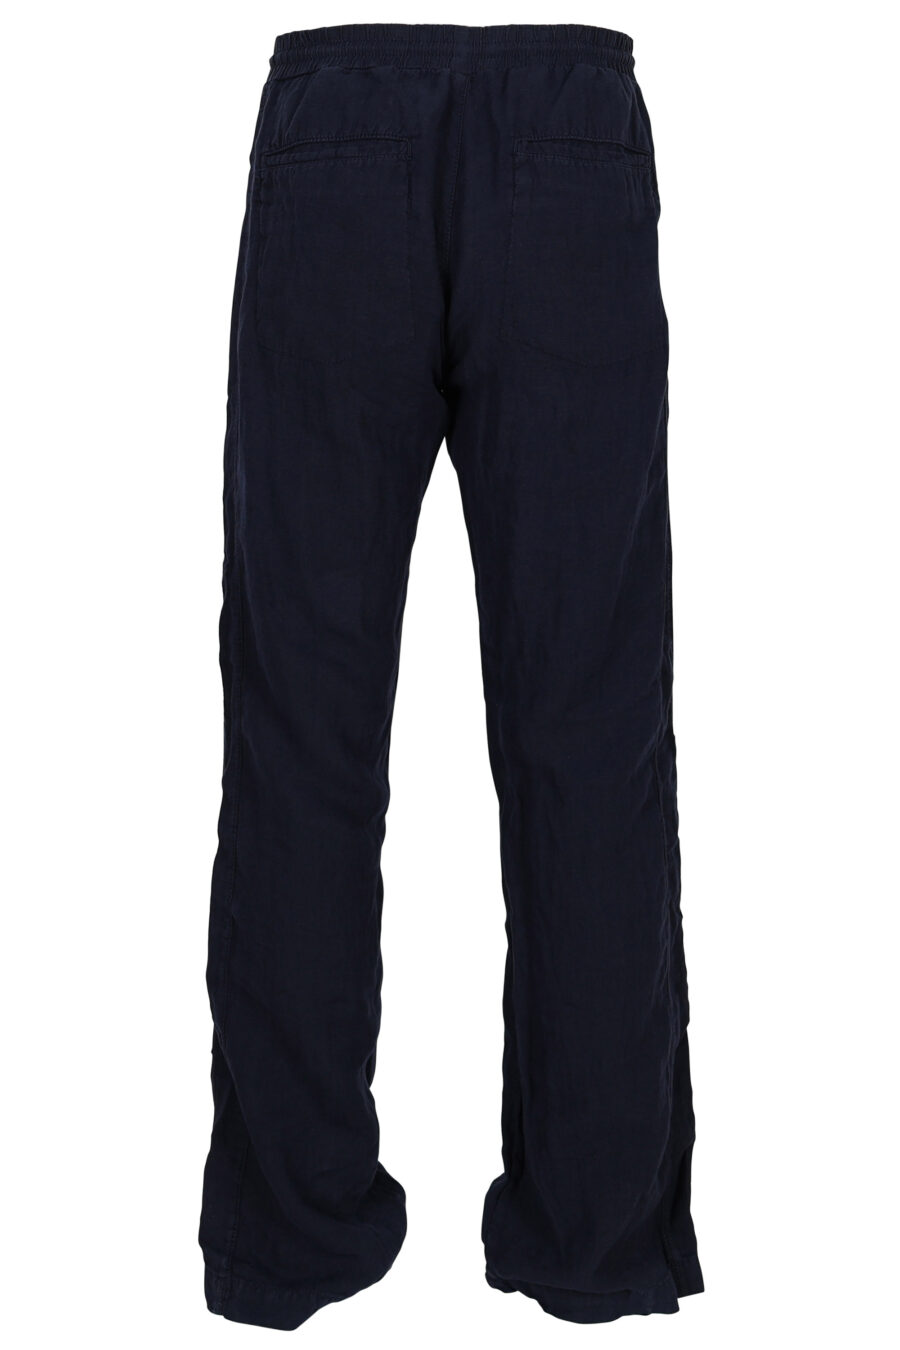 Pantalón de chándal azul oscuro con minilogo - 4062226851497 2